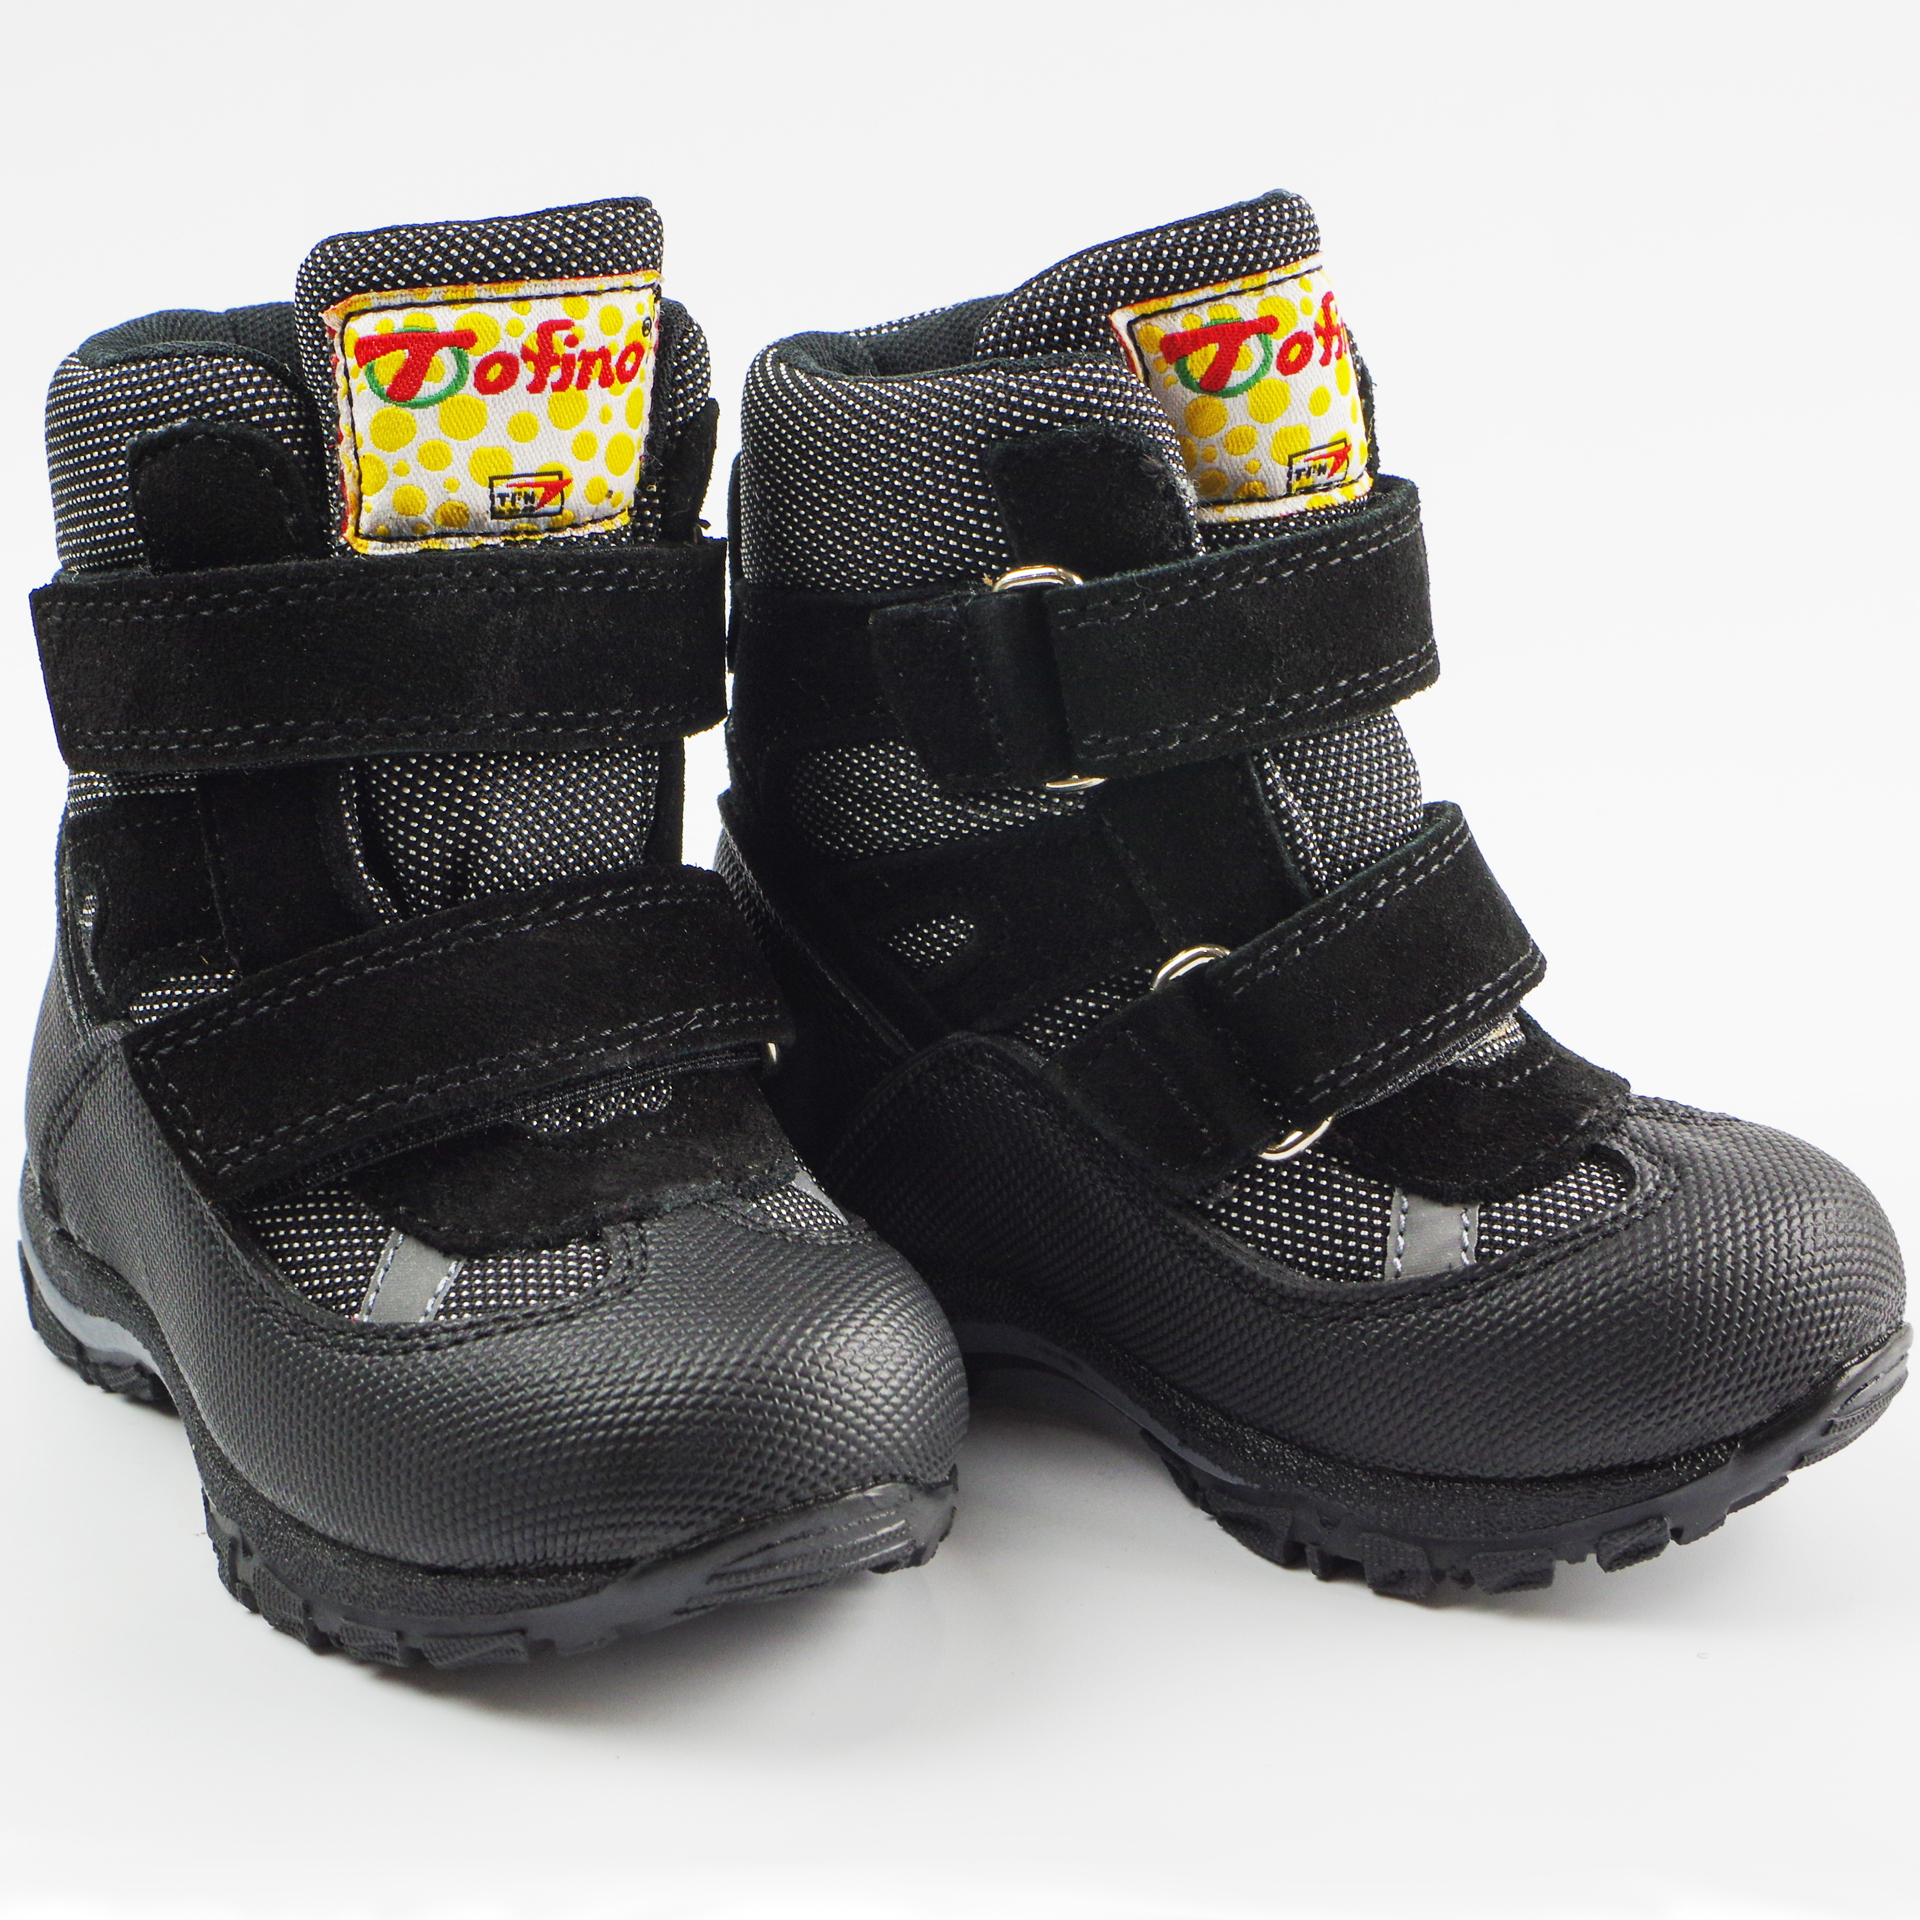 Зимние мембранные ботинки (2147) материал Мембрана, цвет Черный  для мальчиков 22-25 размеры – Sole Kids. Фото 2